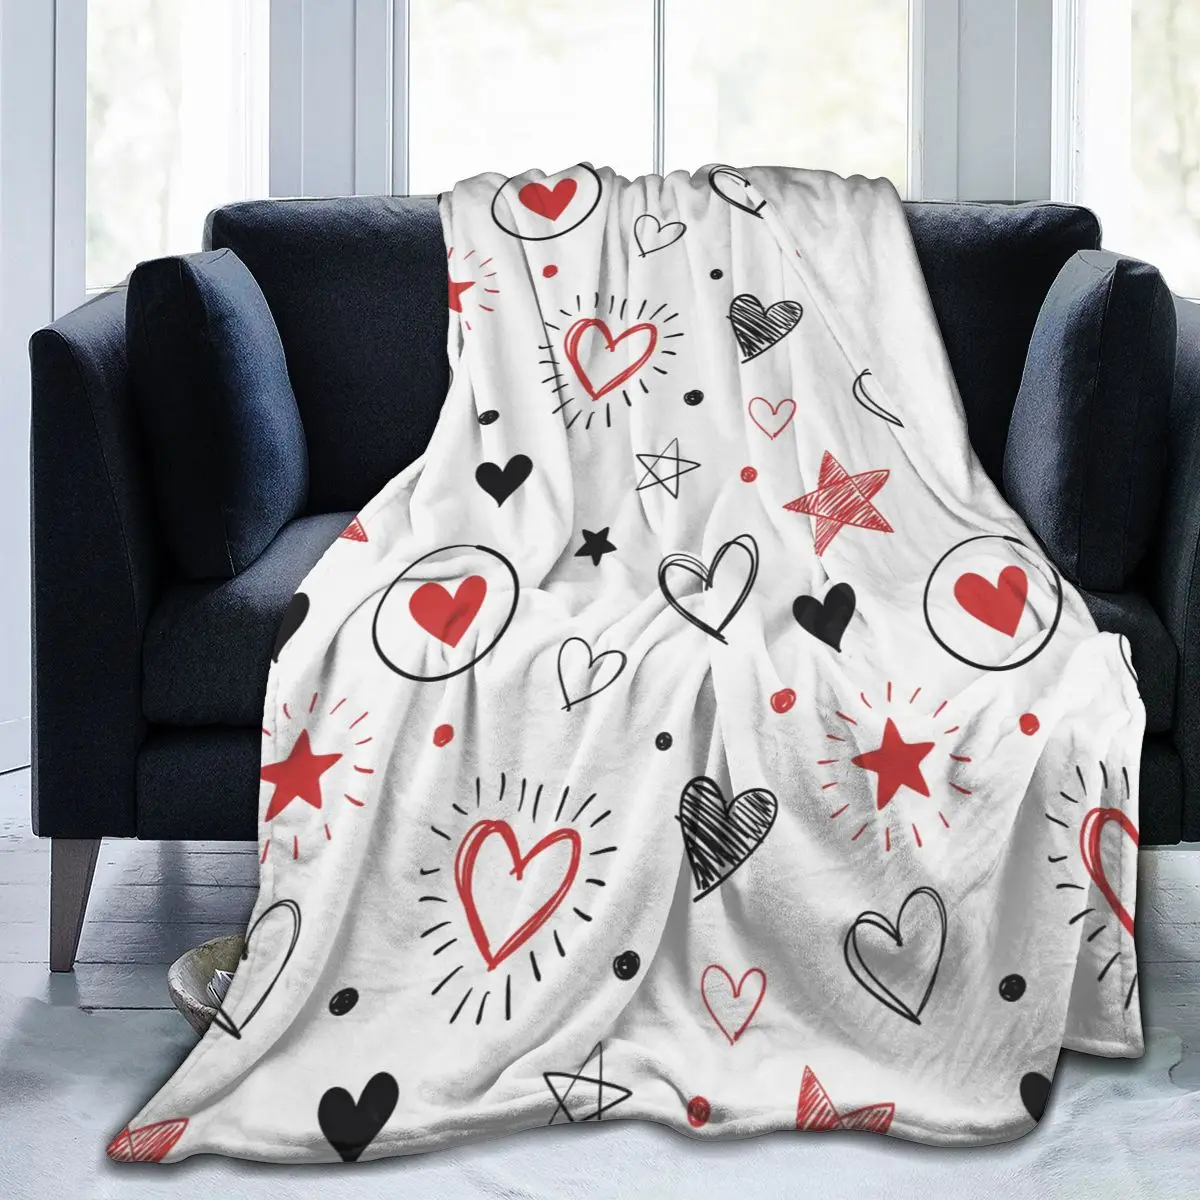 

Мягкое теплое фланелевое одеяло, смешные сердца и звезды, переносное зимнее тонкое одеяло для кровати, дивана